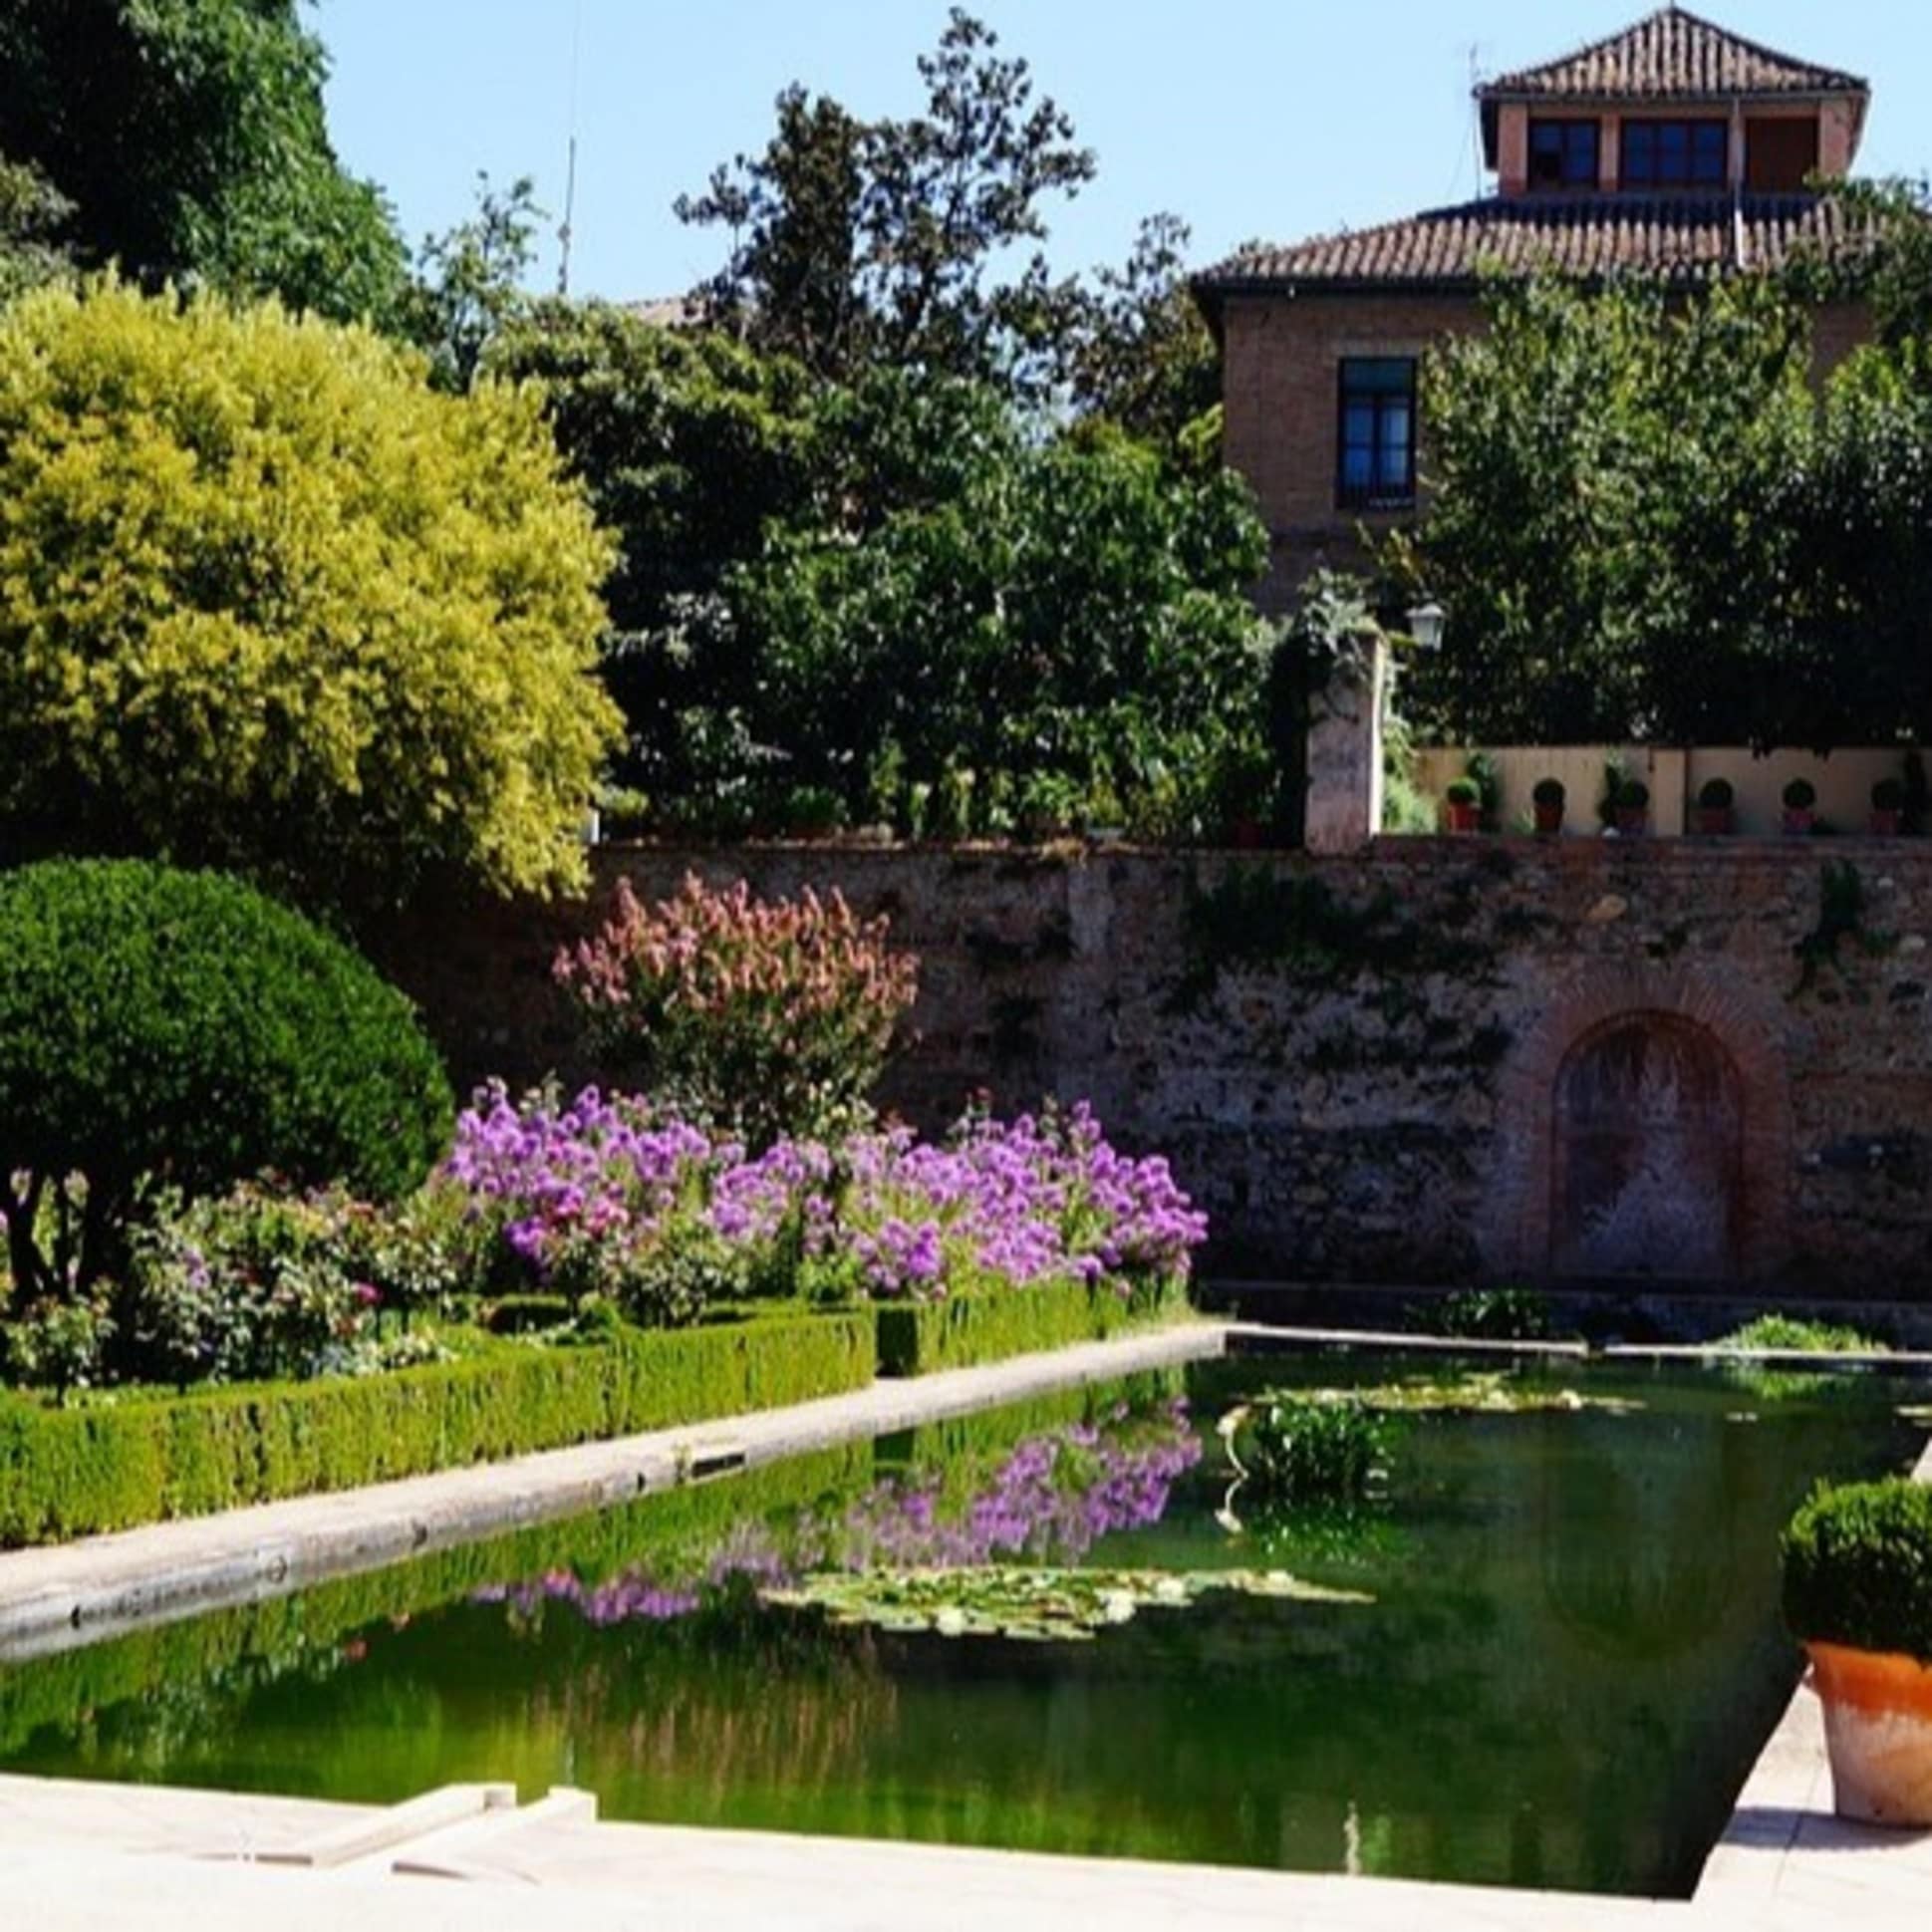 Herrschaftliche Finca in Andalusien mit gepflegtem Garten und Teich